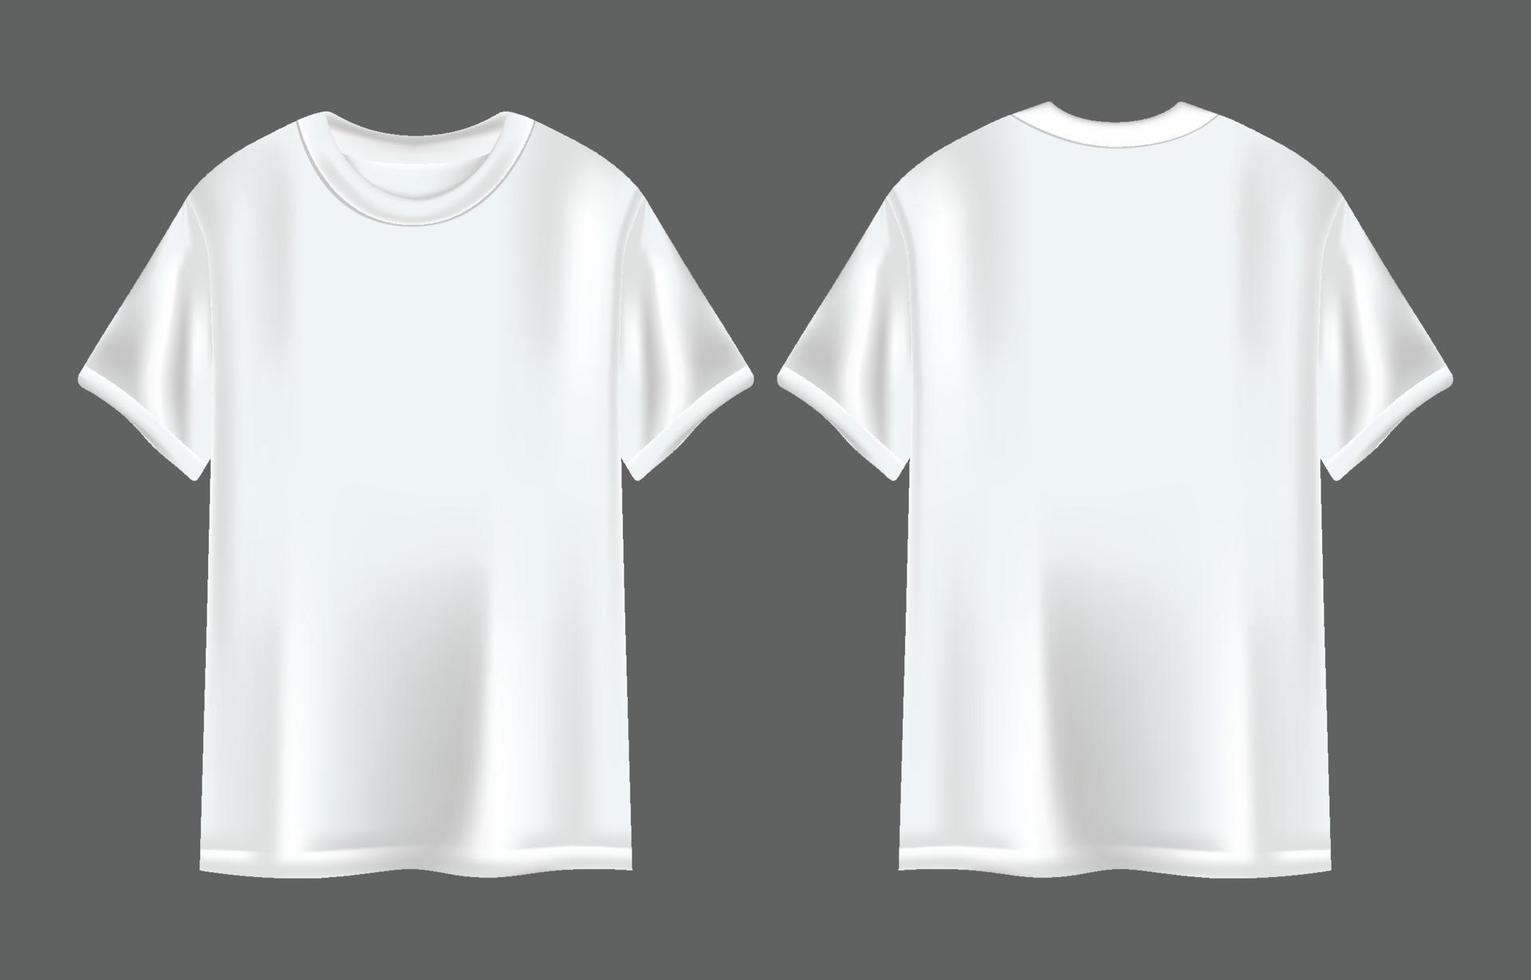 3D T-Shirt White Template vector